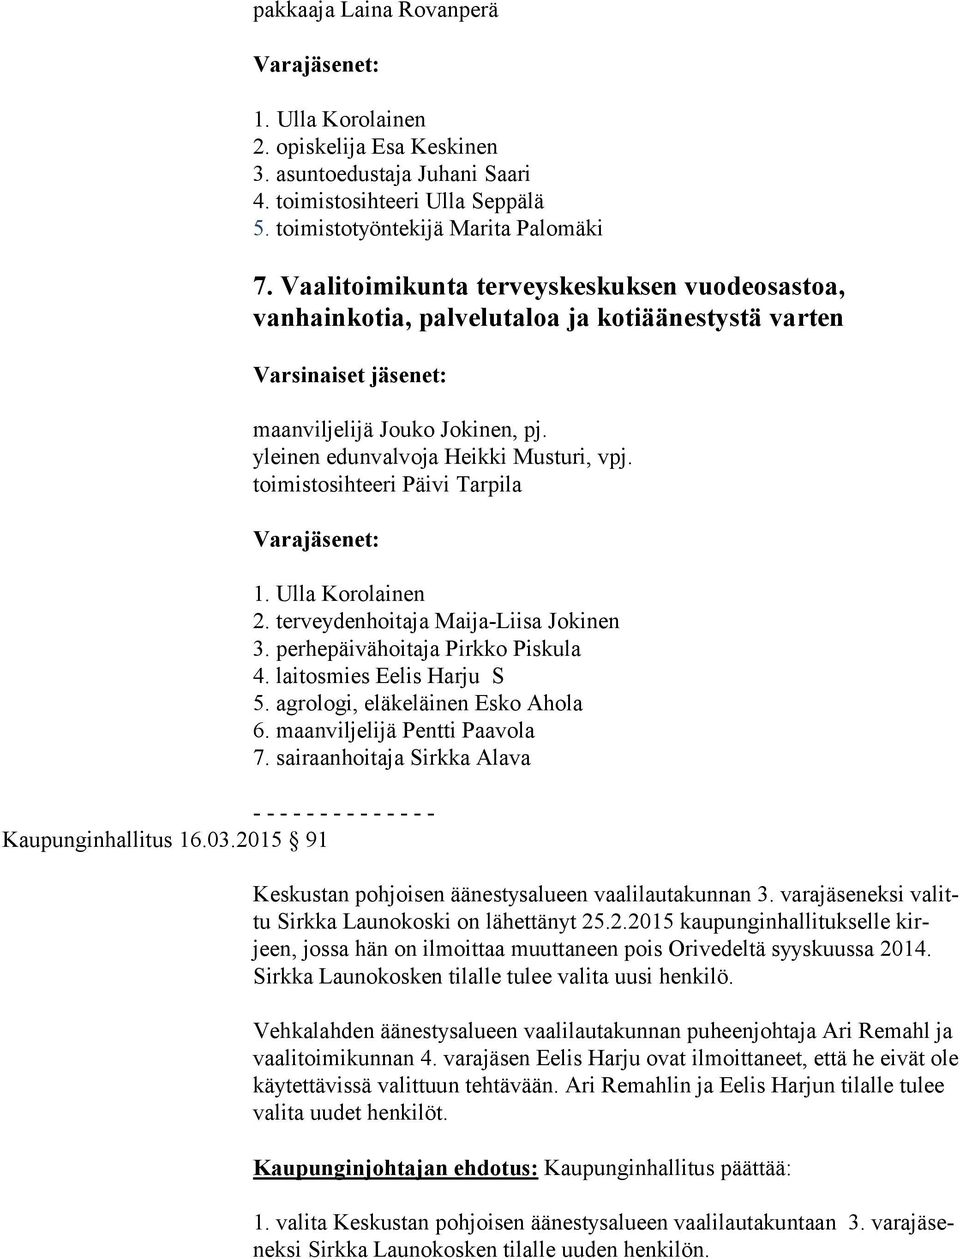 toimistosihteeri Päivi Tarpila - - - - - - - - - - - - - - Kaupunginhallitus 16.03.2015 91 1. Ulla Korolainen 2. terveydenhoitaja Maija-Liisa Jokinen 3. perhepäivähoitaja Pirkko Piskula 4.